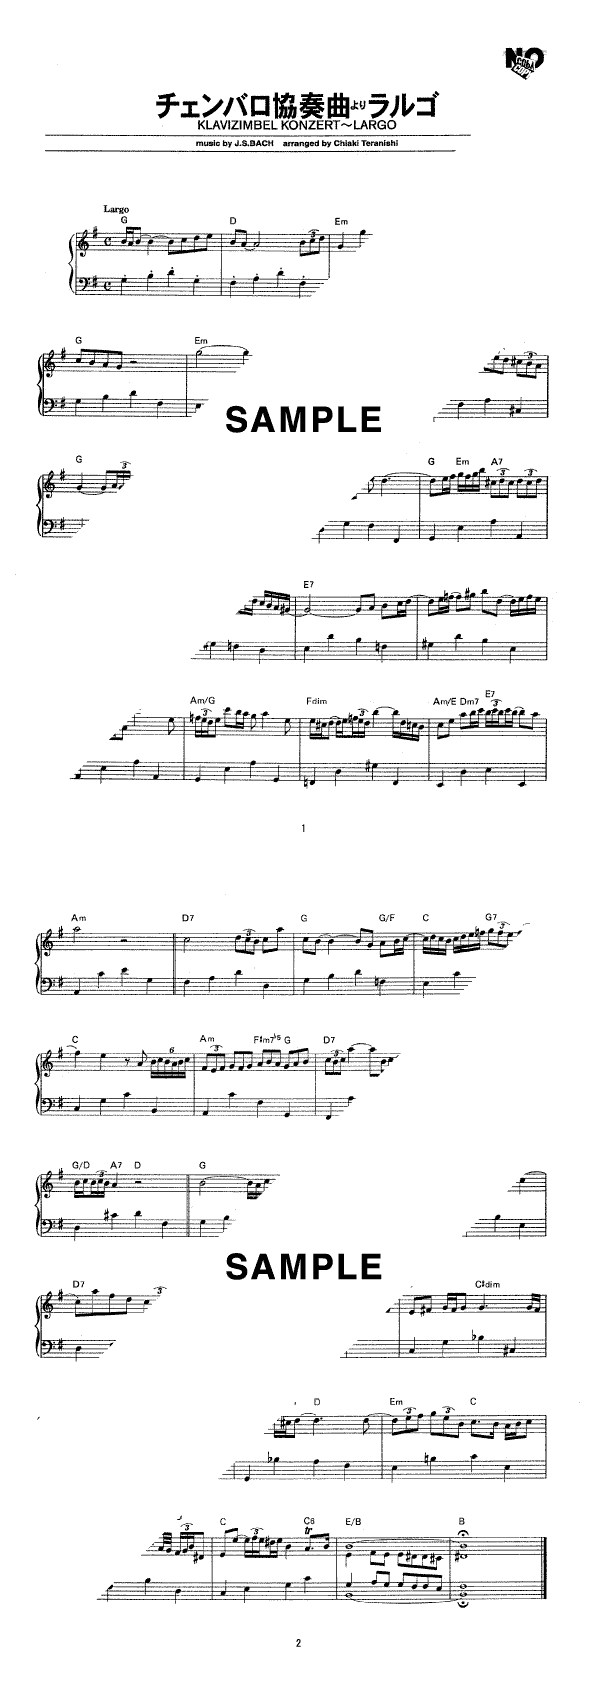 楽譜】チェンバロ協奏曲第5番より ラルゴ(アリオーソ) / J.S.バッハ 